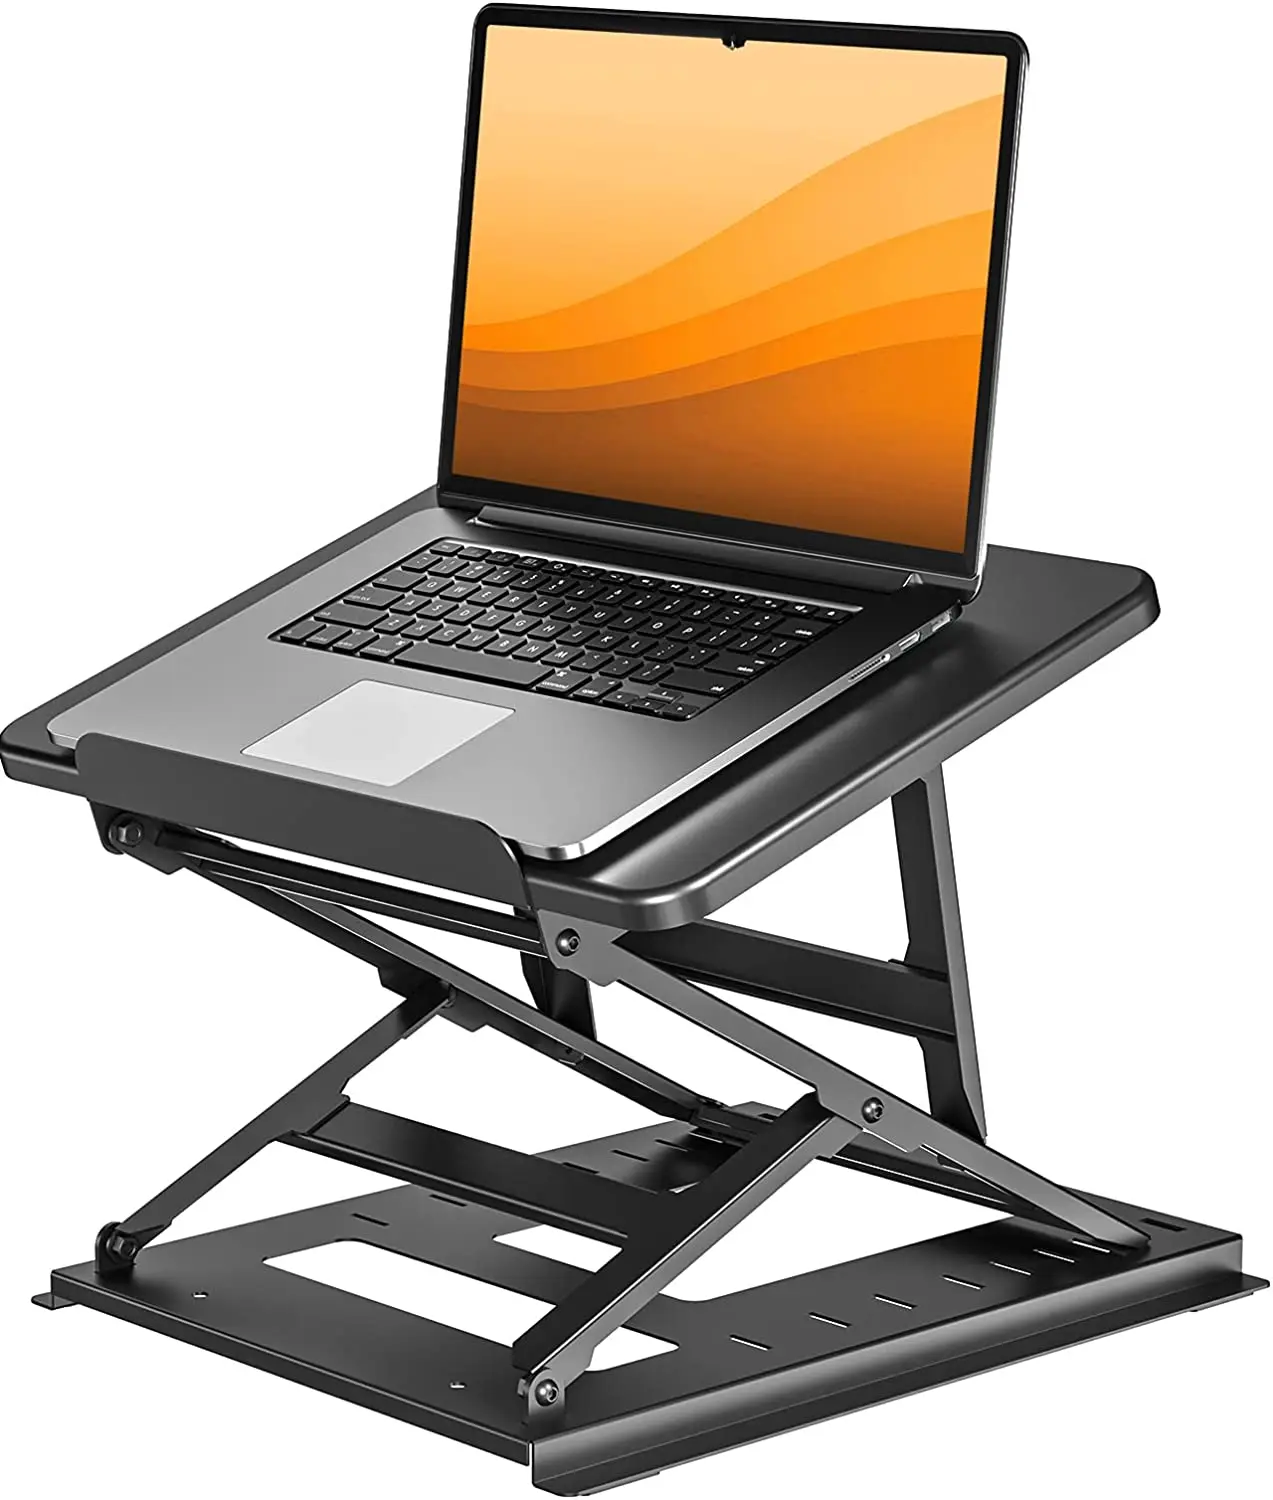 

Регулируемая подставка для ноутбука HUANUO, подставка для ноутбука с регулируемой высотой, легко сидеть или стоять с 9 регулируемыми углами,